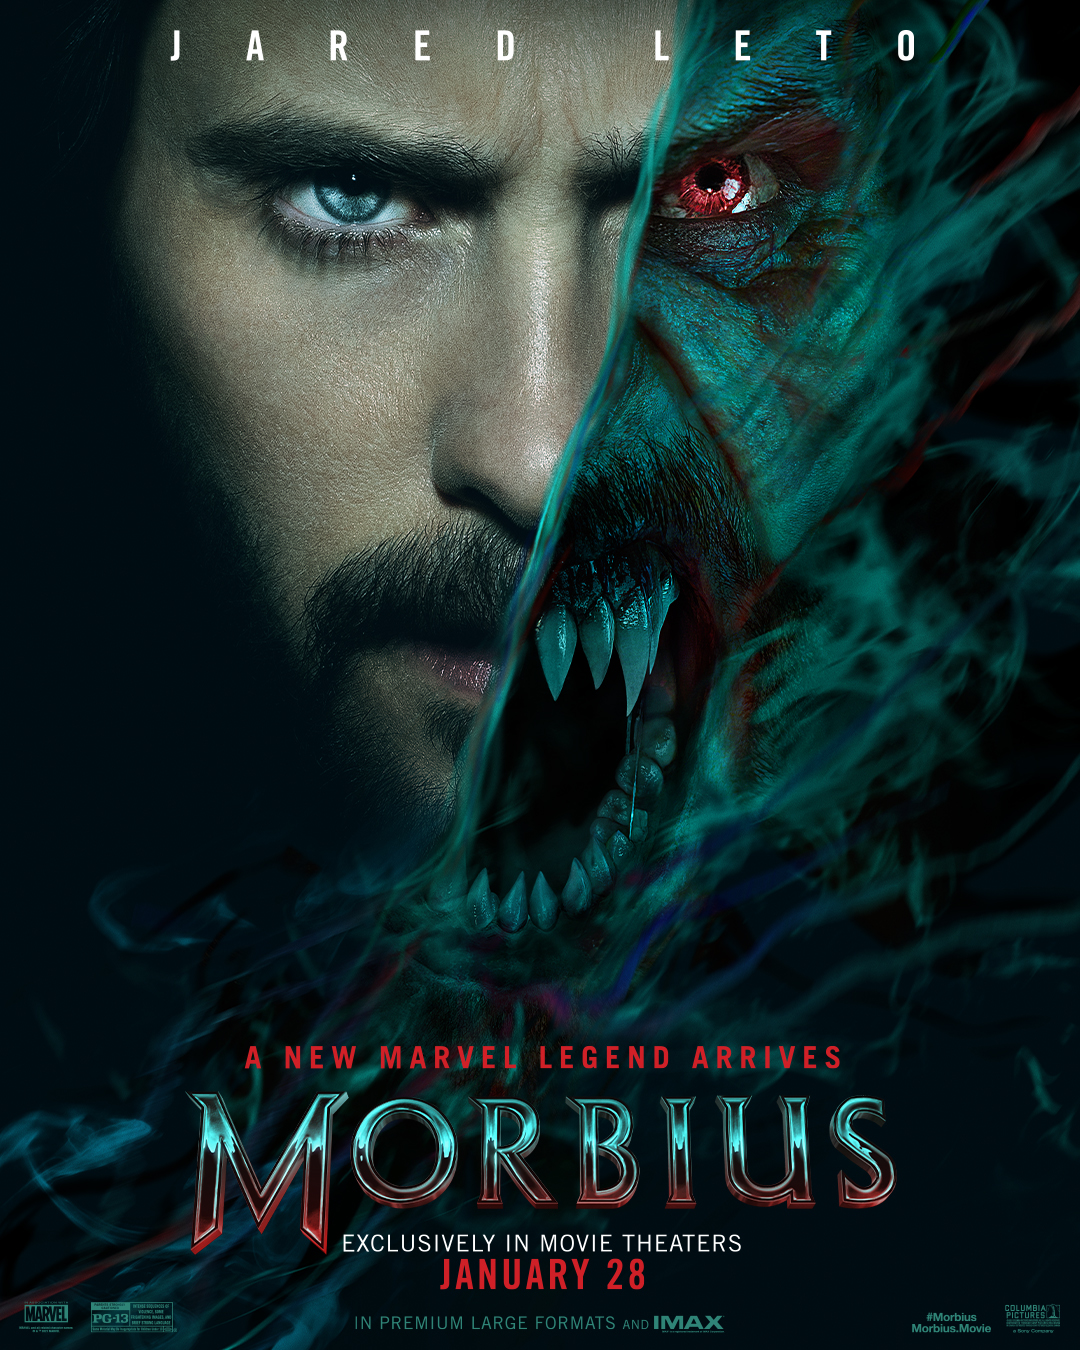 Jared Leto Morbius poster Sony Marvel